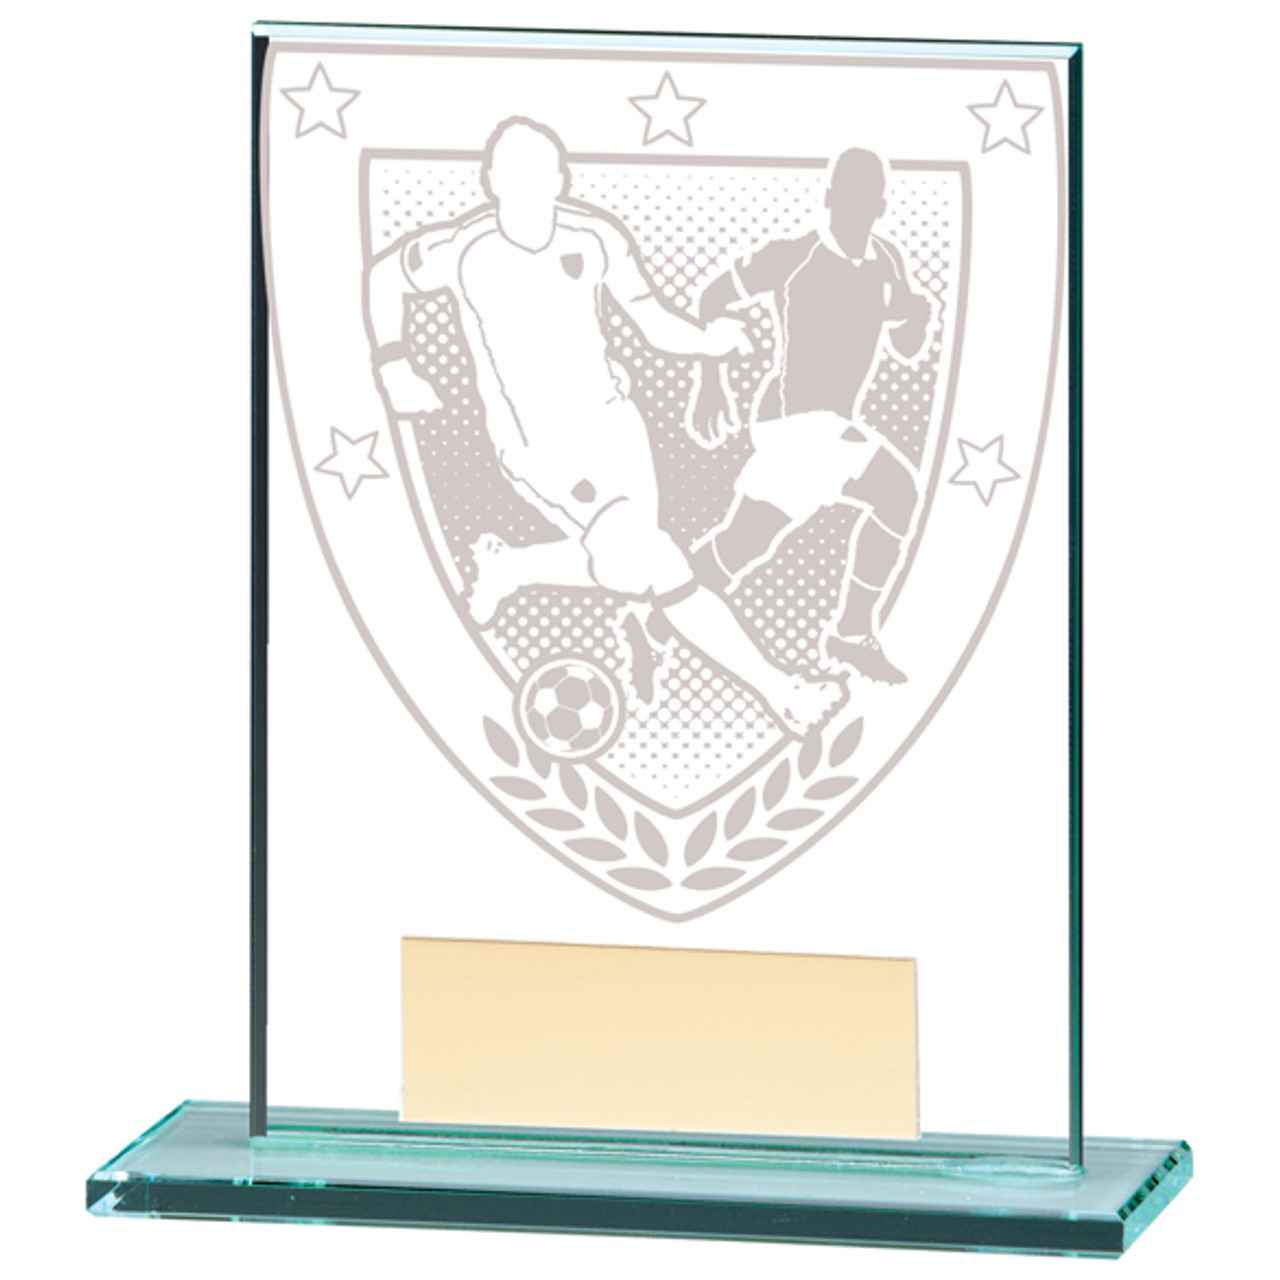 MILLENNIUM Football Glass Award